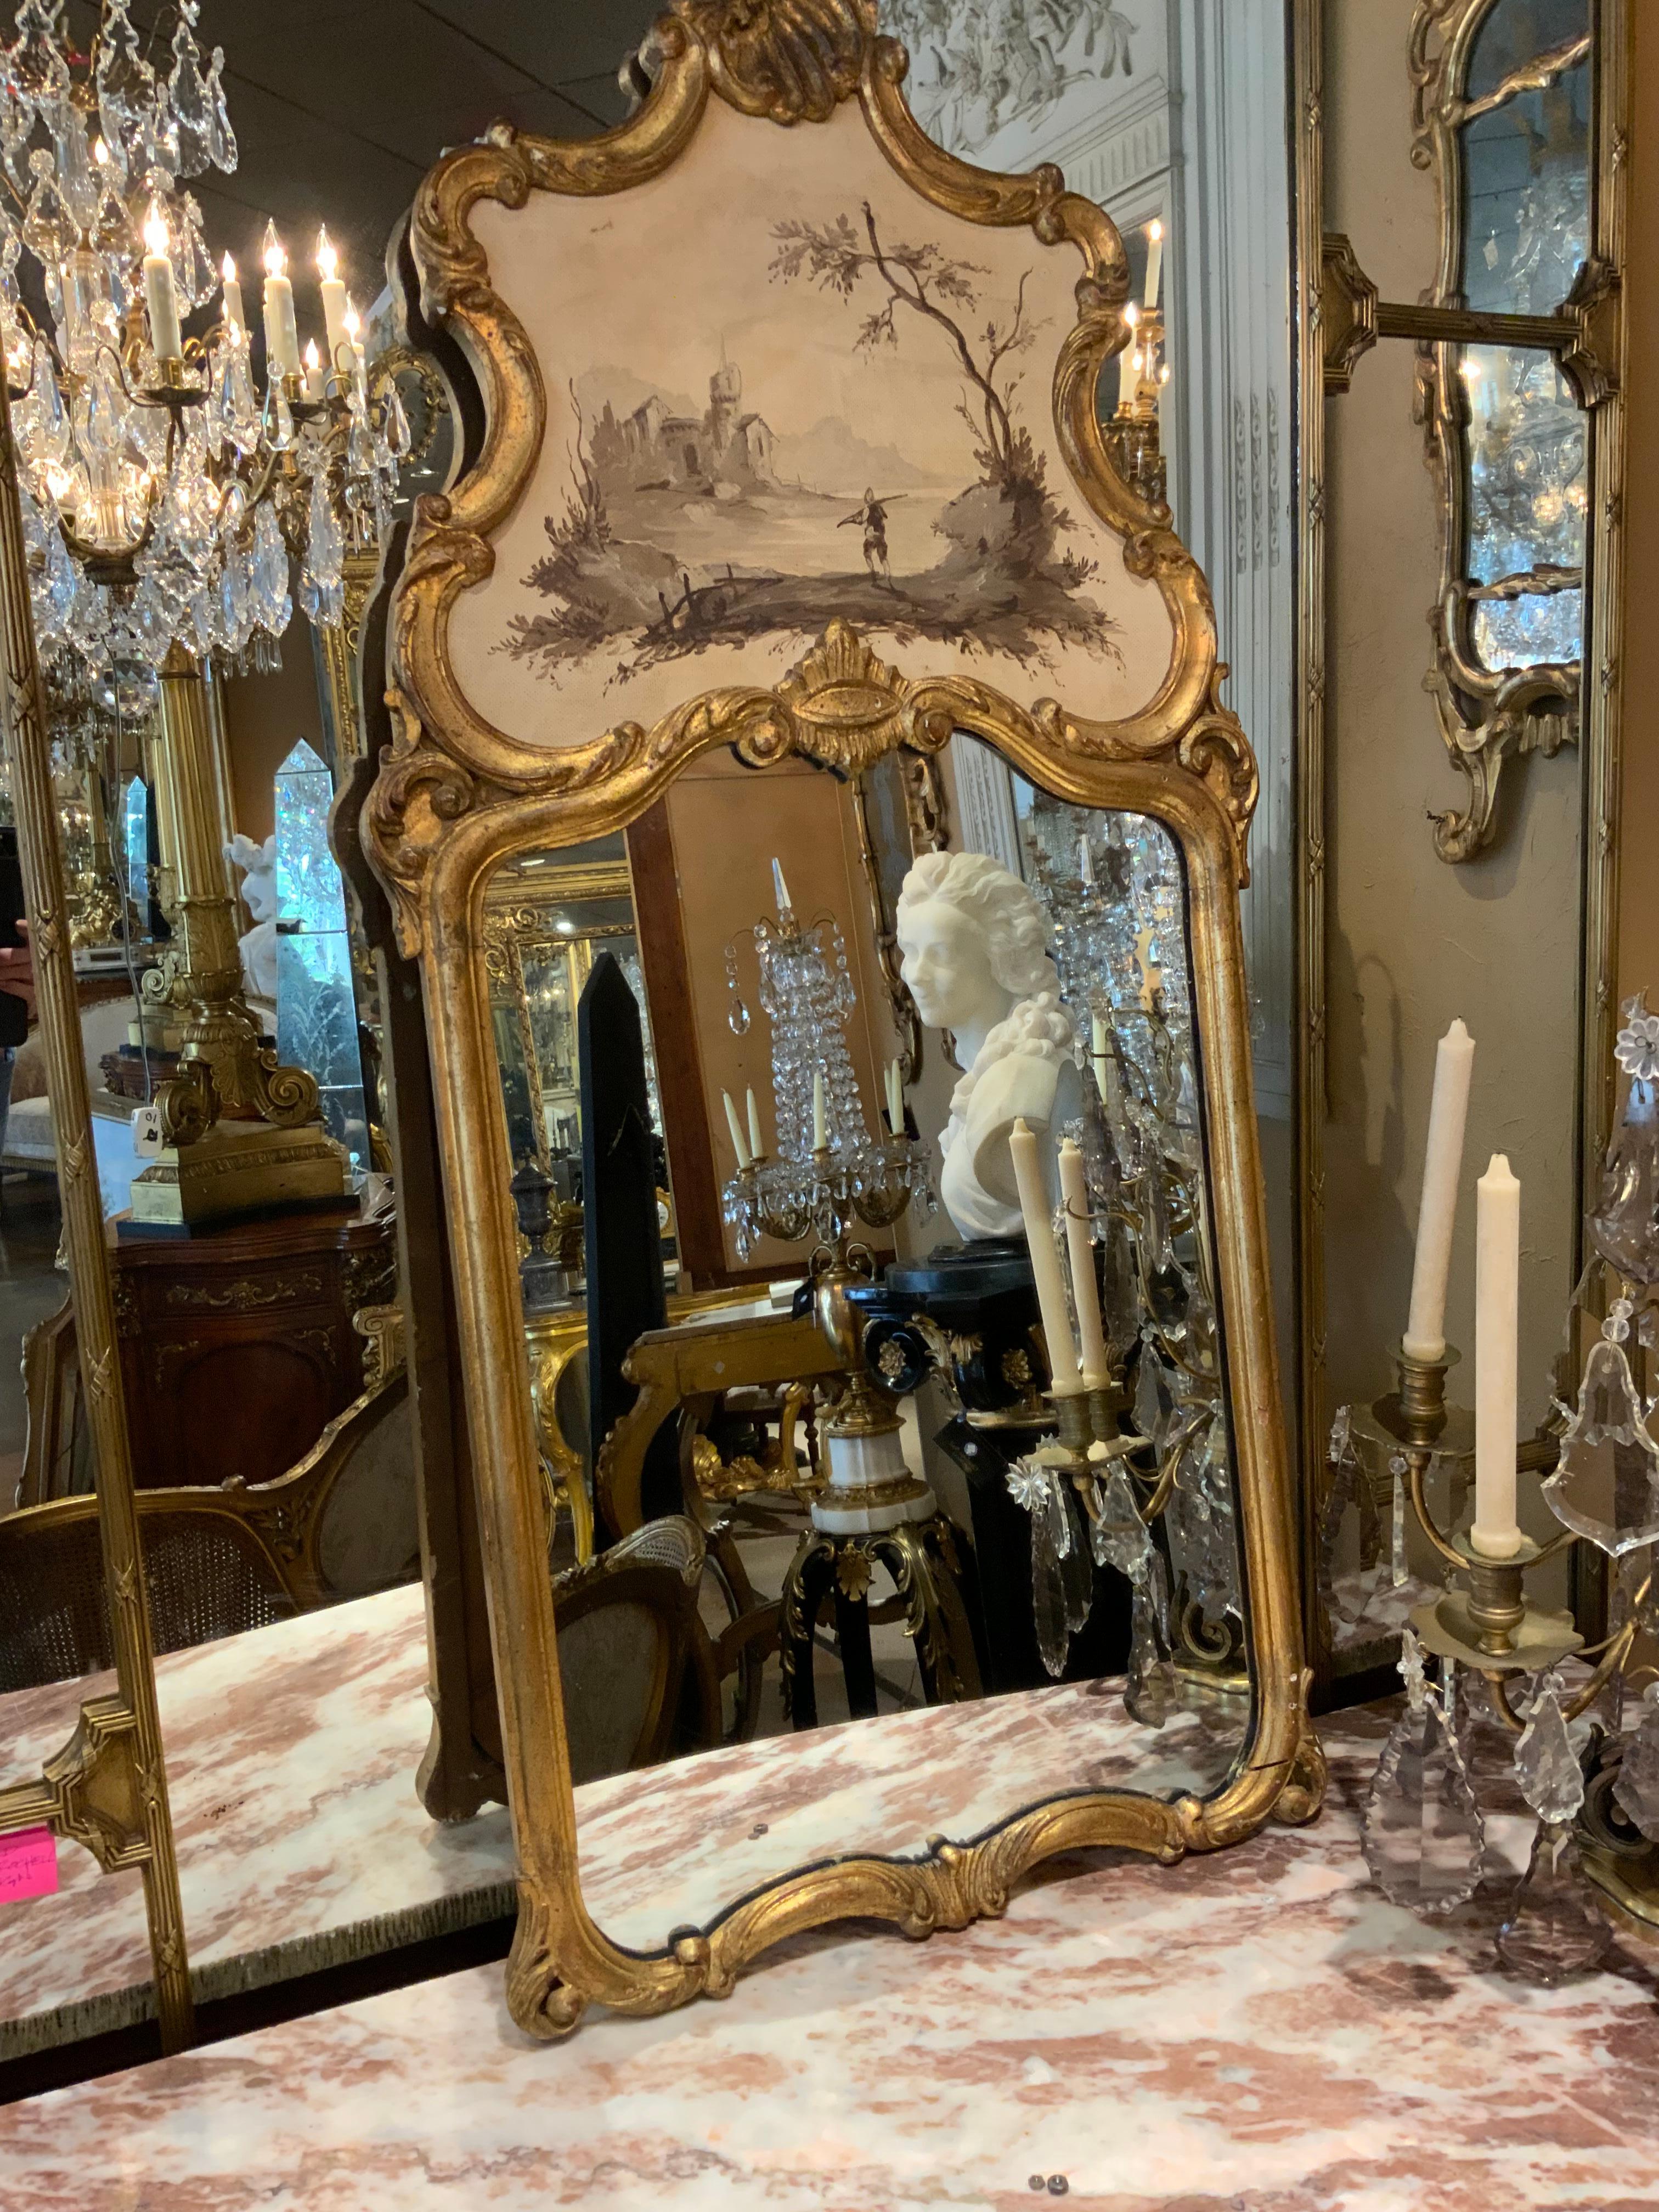 Ces miroirs exceptionnels sont dans le goût du rococo vénitien.
Ils ont des entourages rococo sculptés de volutes, avec la partie supérieure de la fenêtre
Tablettes décorées de personnages peints à la main dans des paysages
En grisaille.